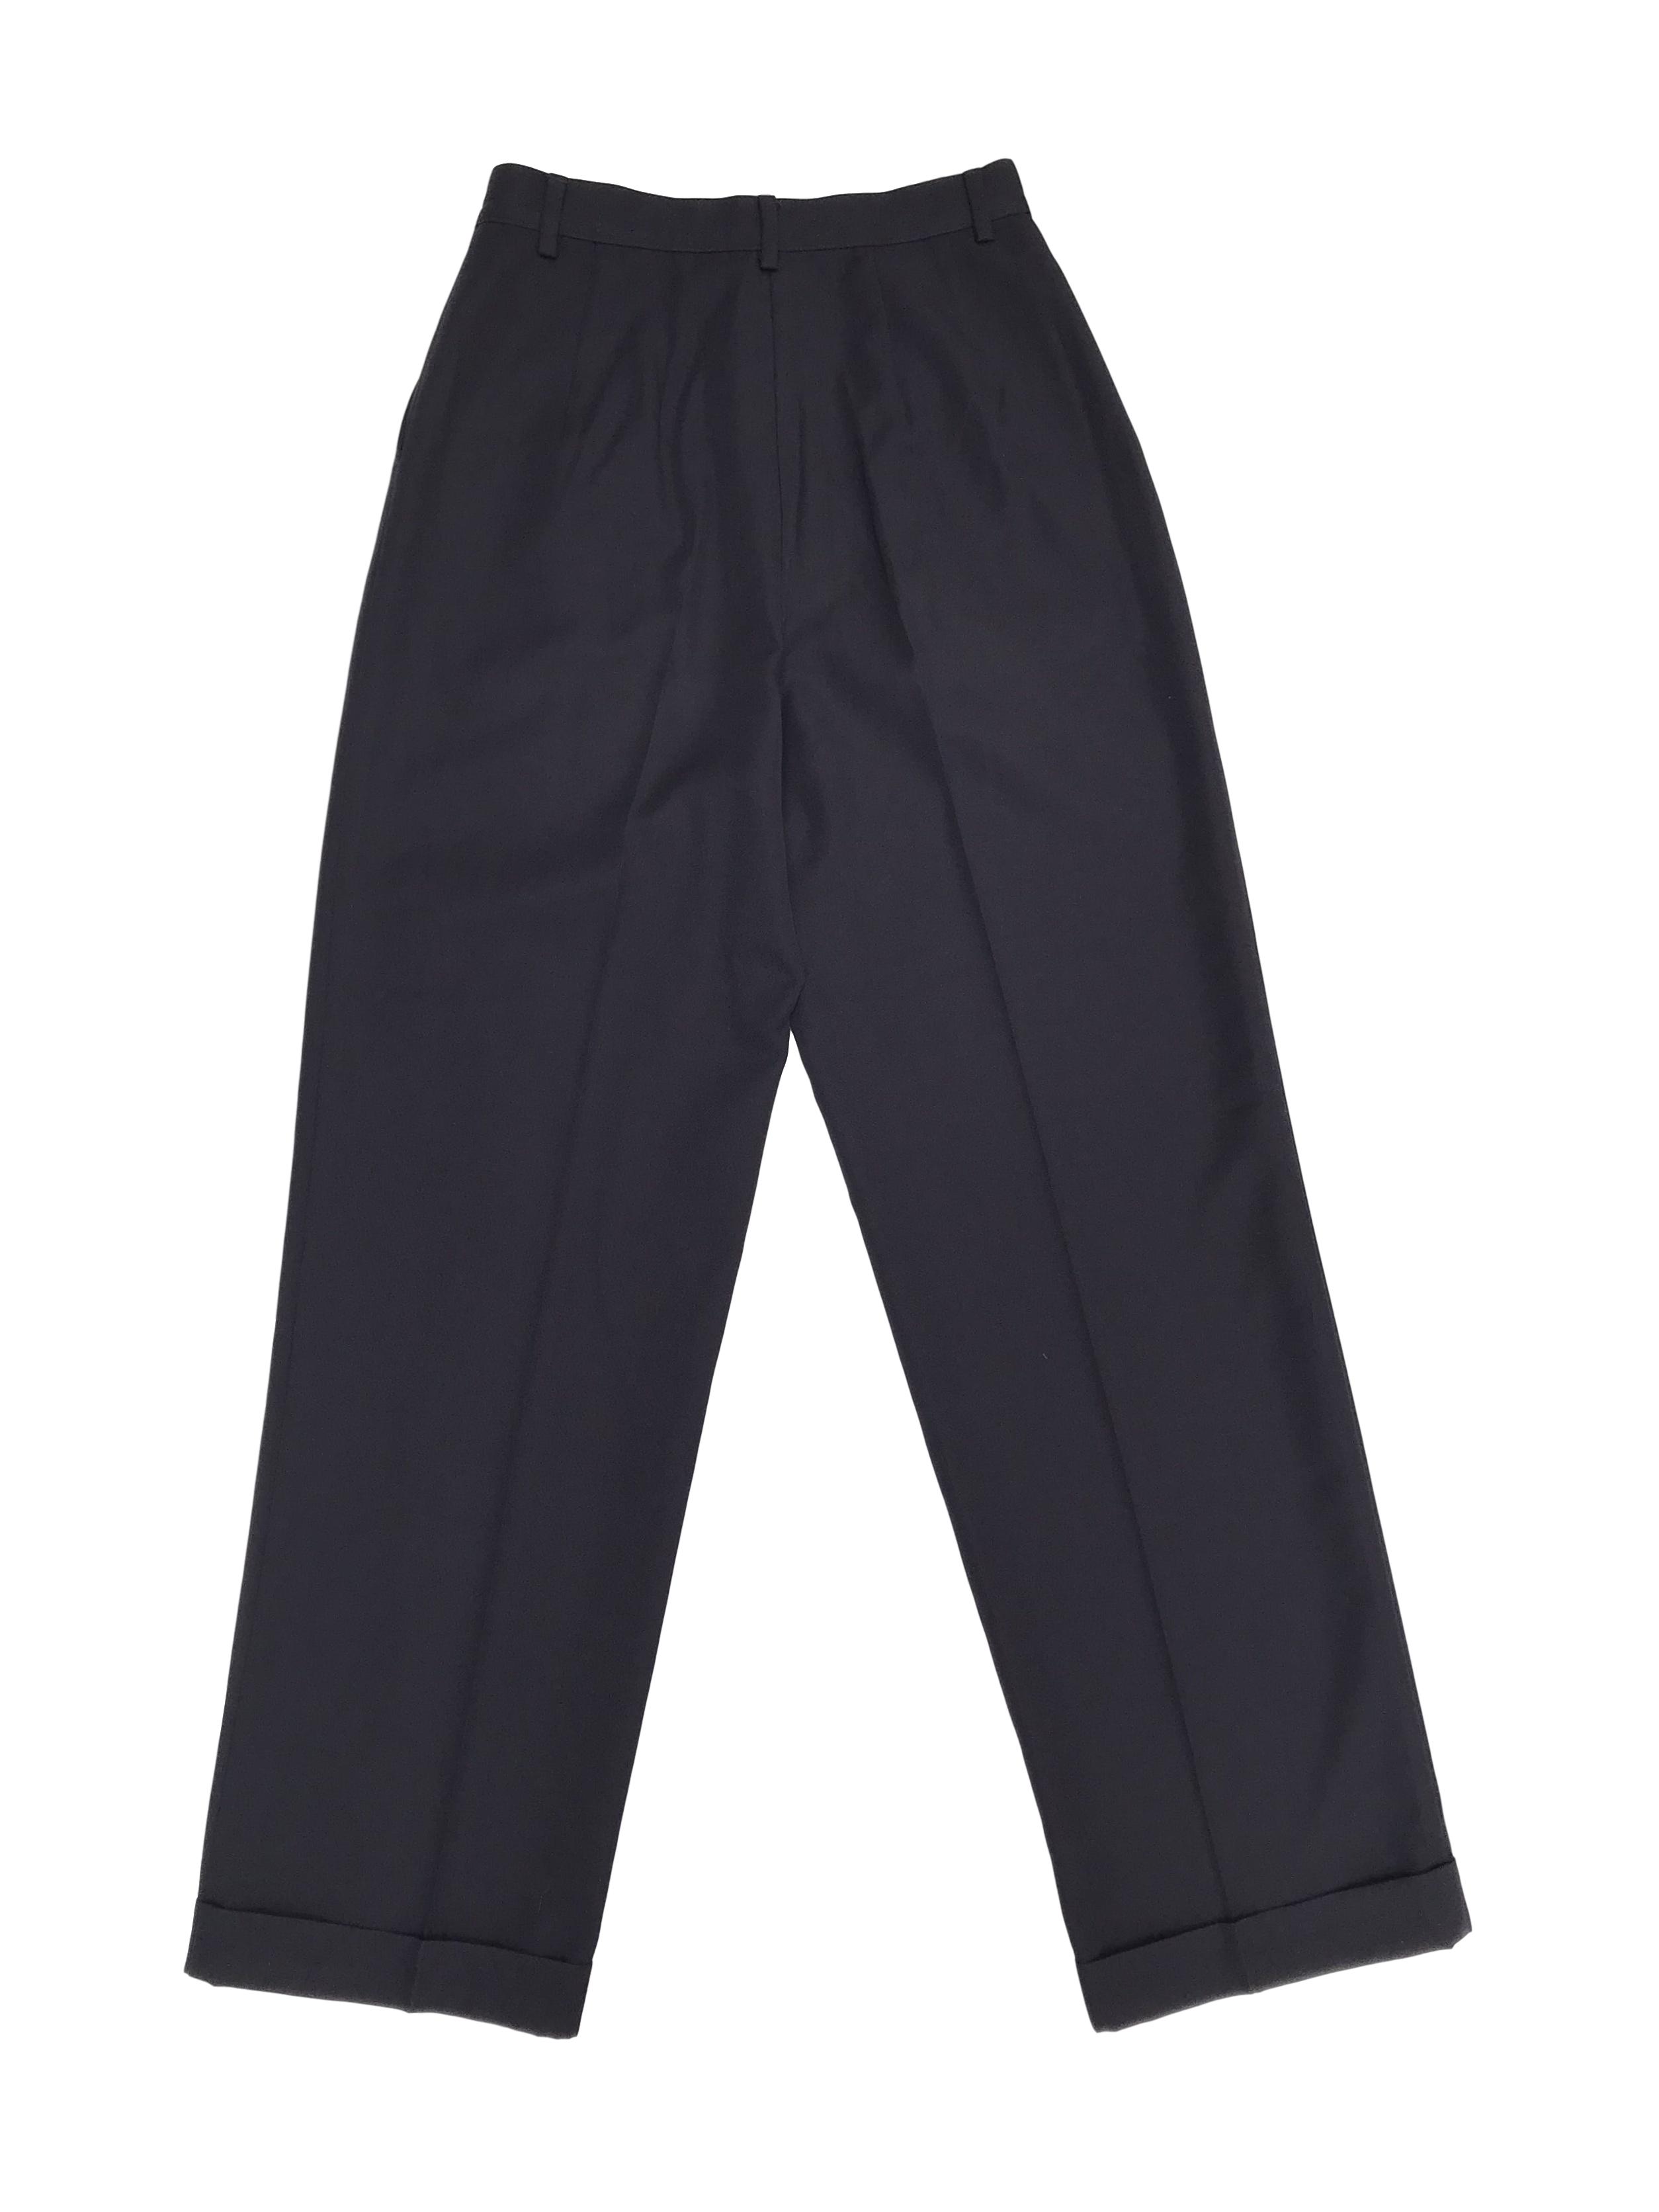 Pantalón Sisley azul 45% lana, a la cintura con pierna ancha tipo palazzo y dobladillo en la basta. Hermoso! Precio original S/ 370